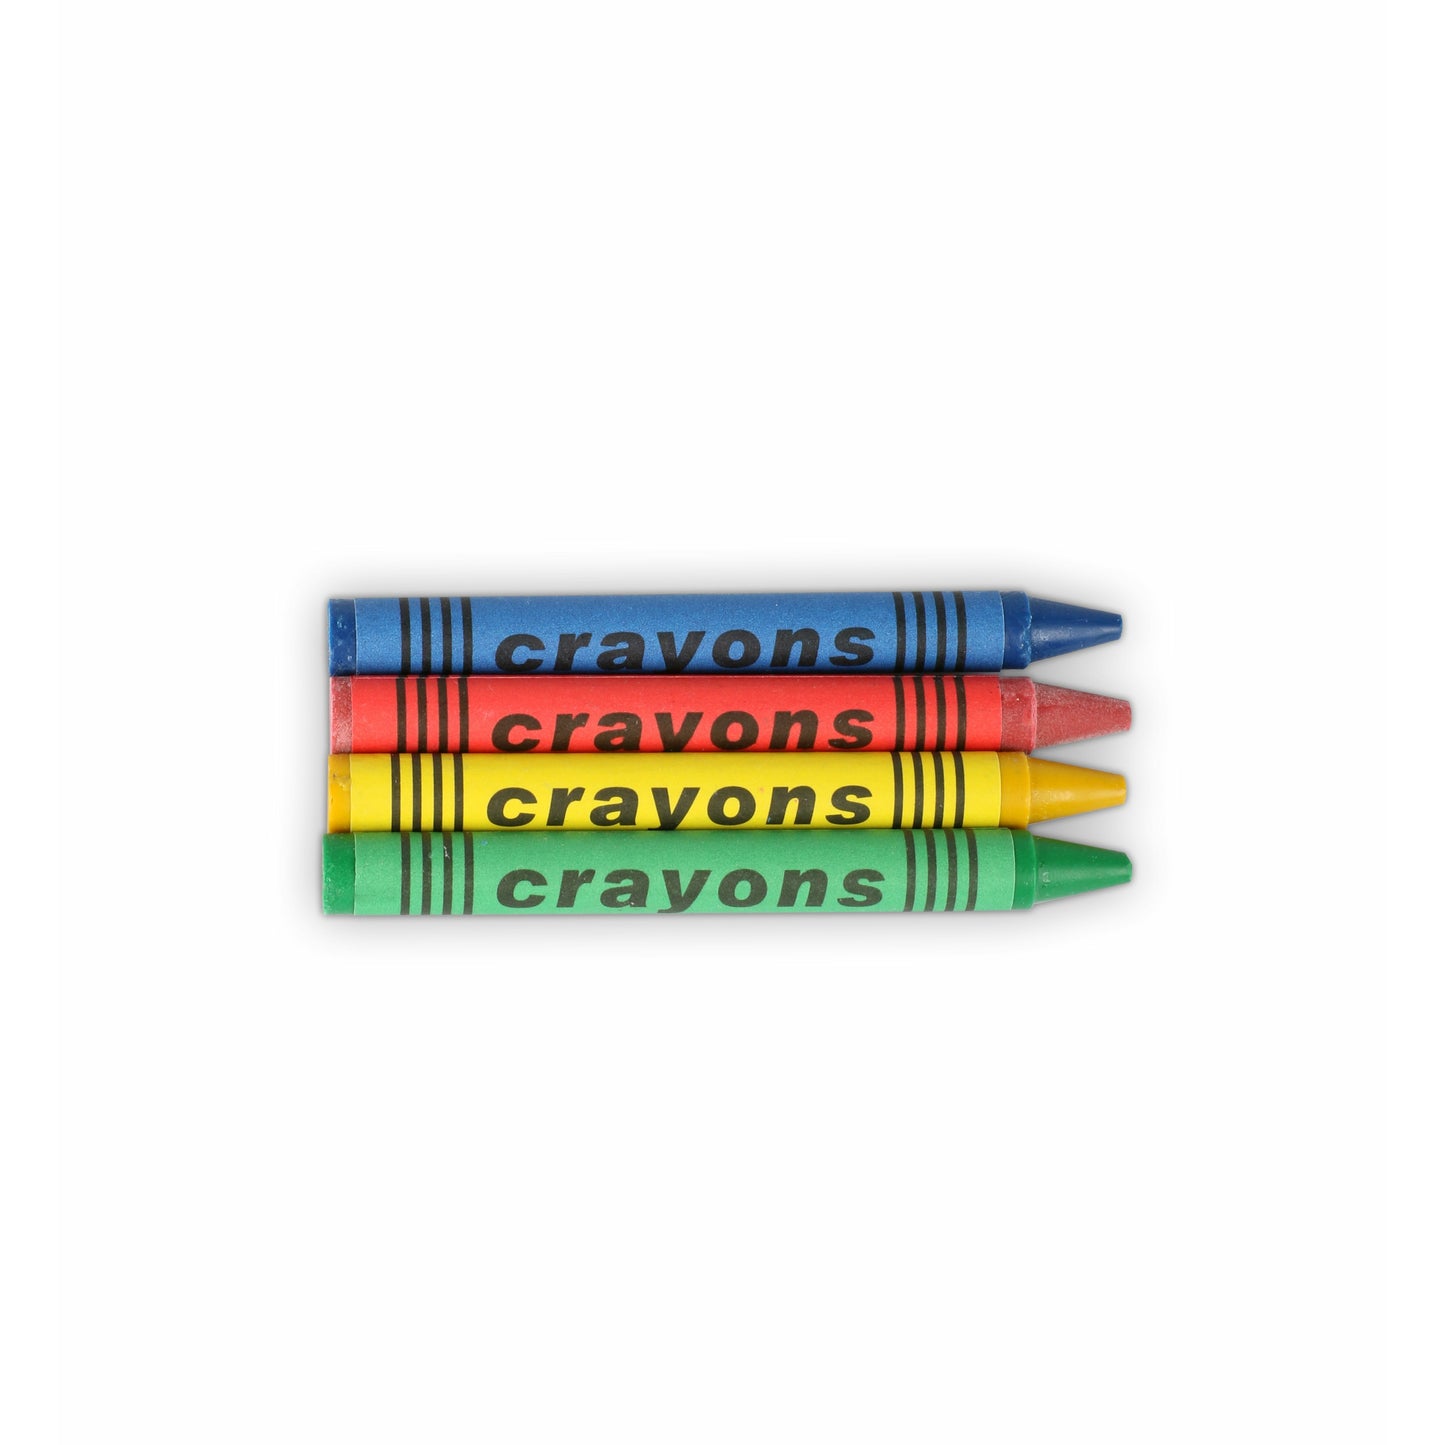 Box of 4 Wax Crayons